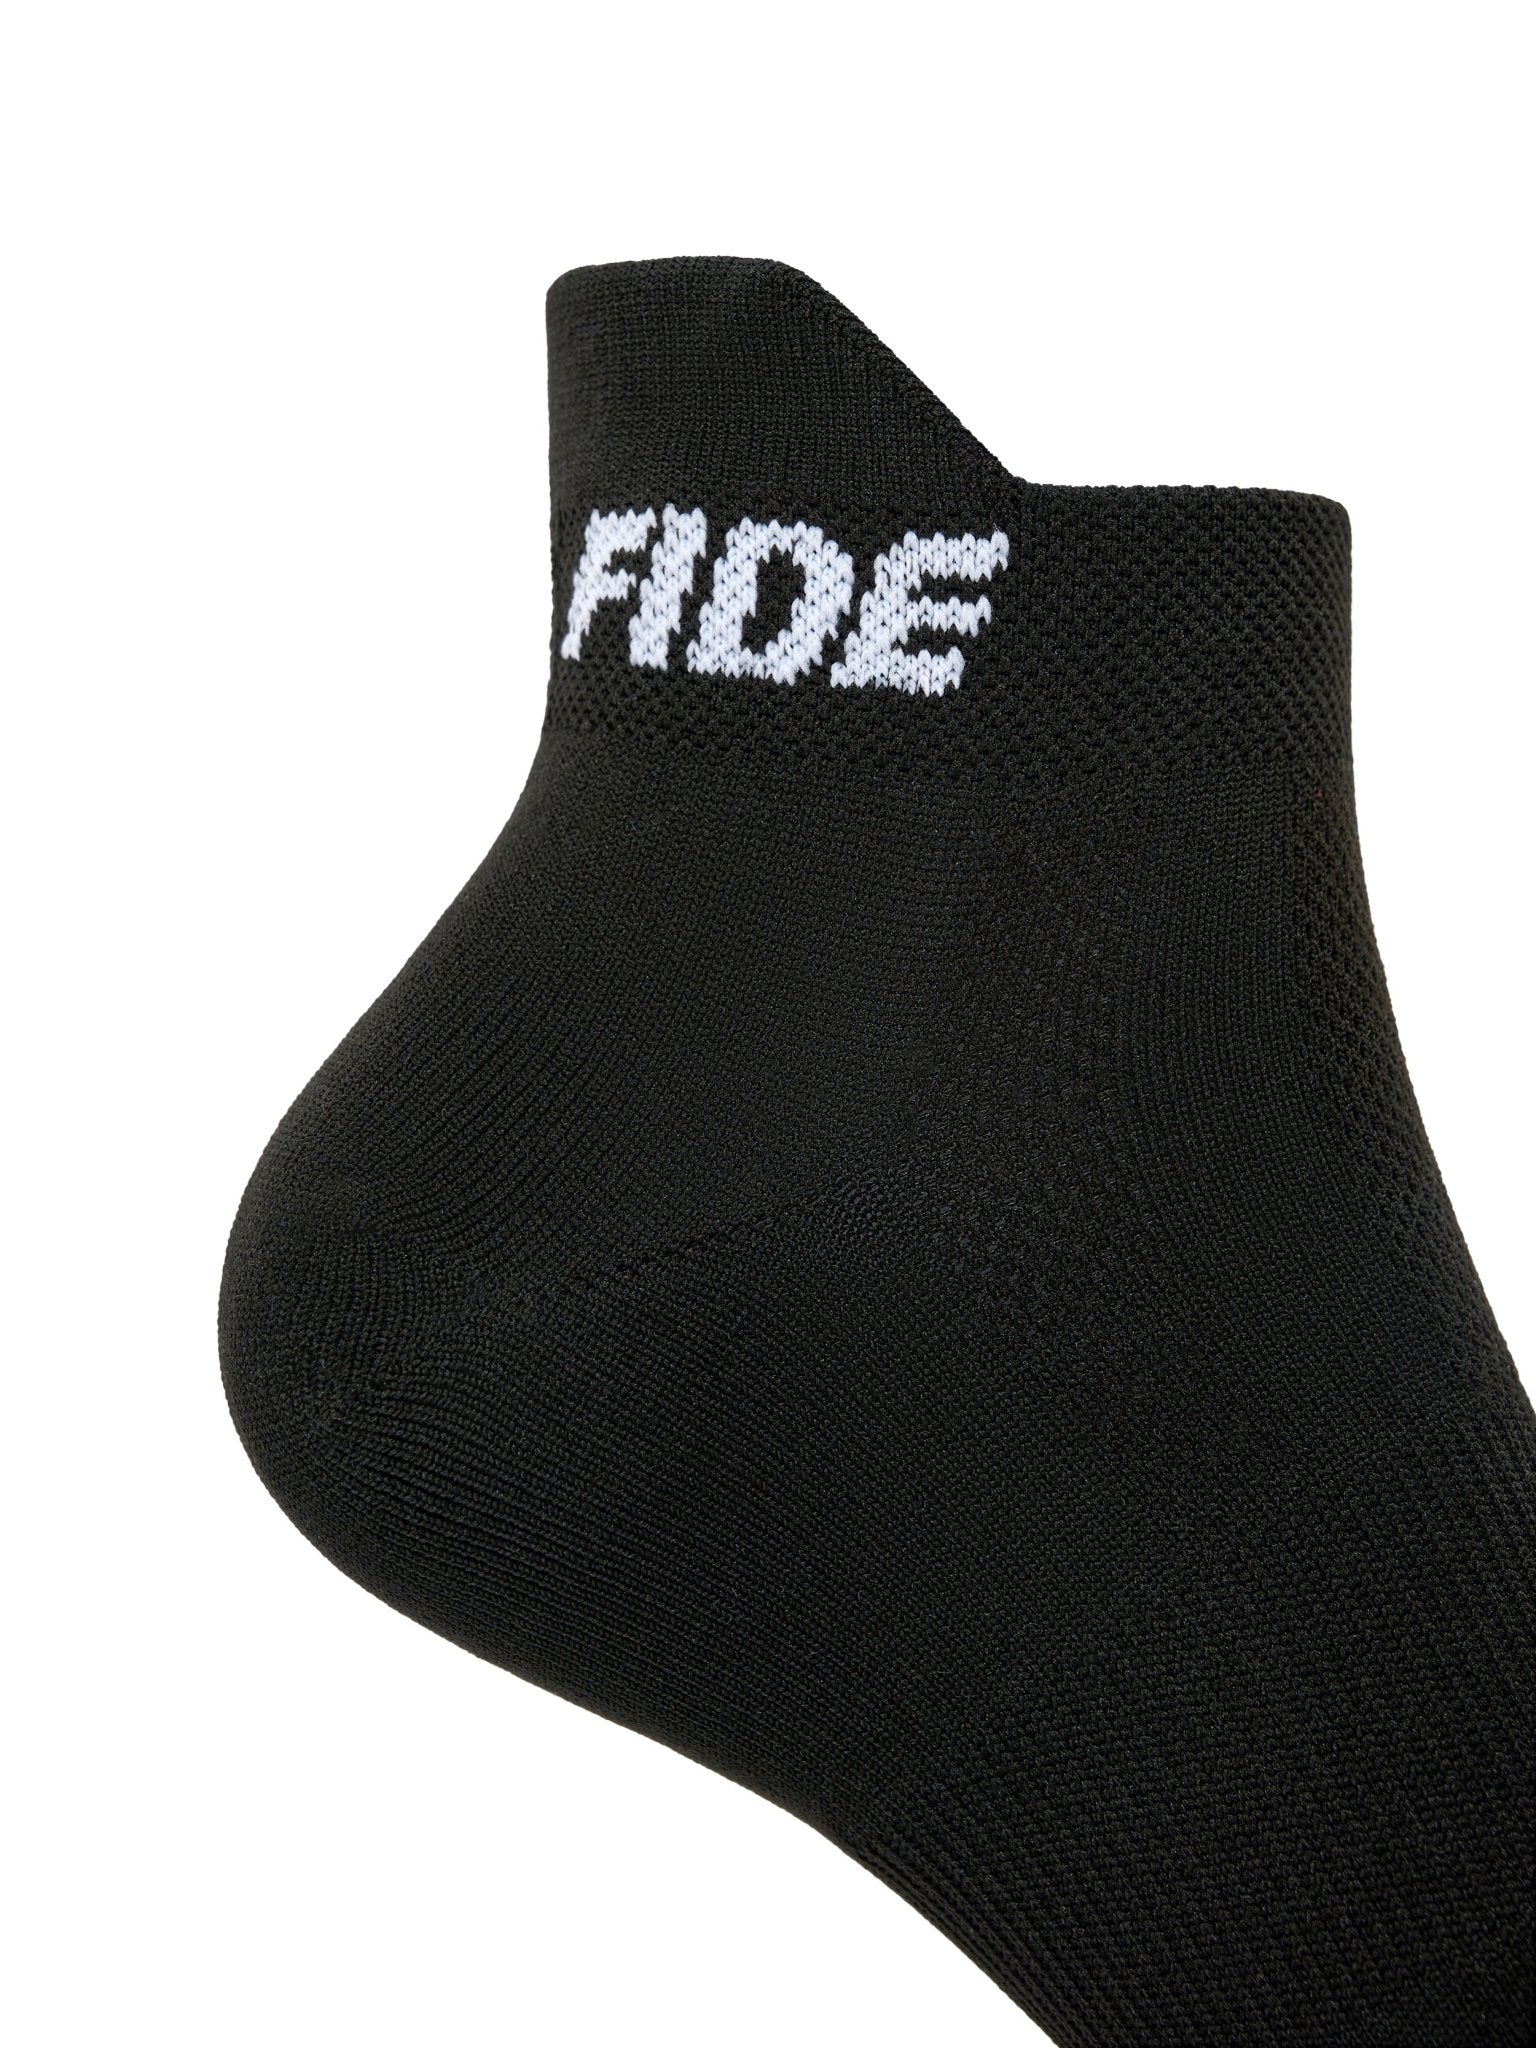 Socks Black (3 pairs) - Bona Fide